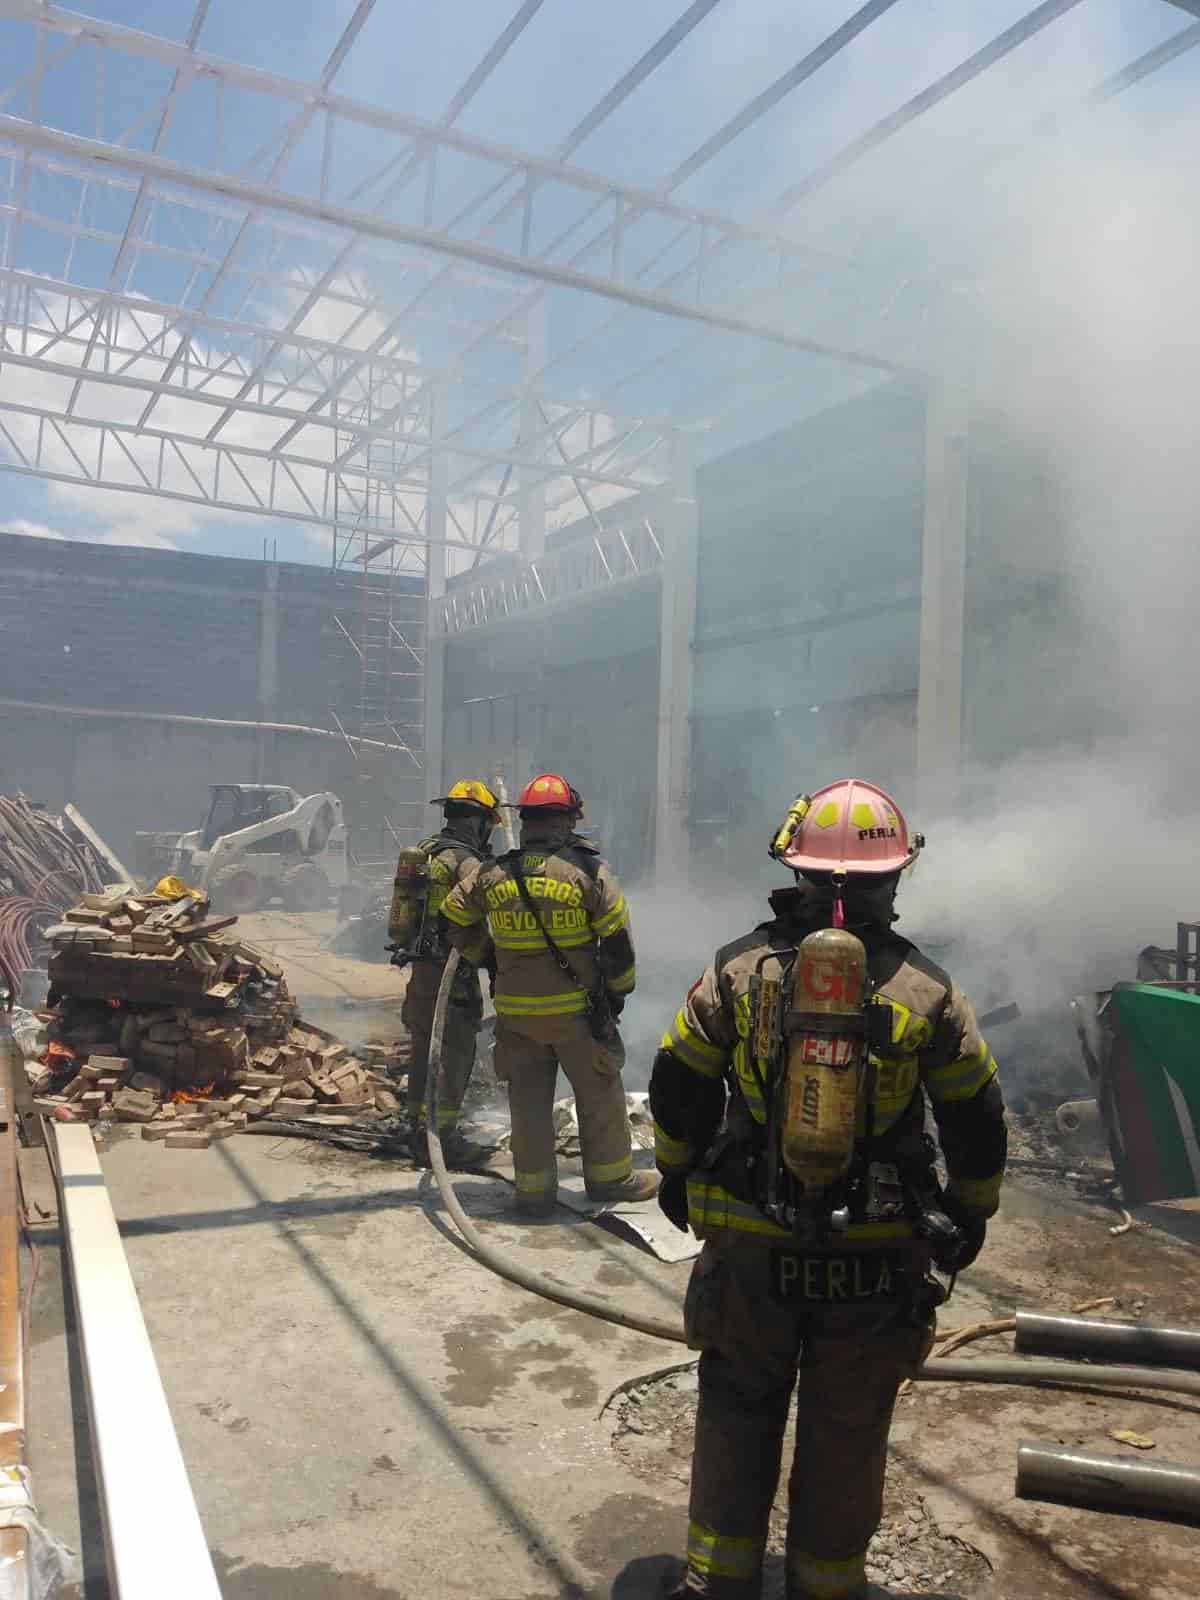 Elementos de la Central de Bomberos de Nuevo León, se concentraron en una bodega ubicada en la Colonia Moderna, donde se reportó un incendio.